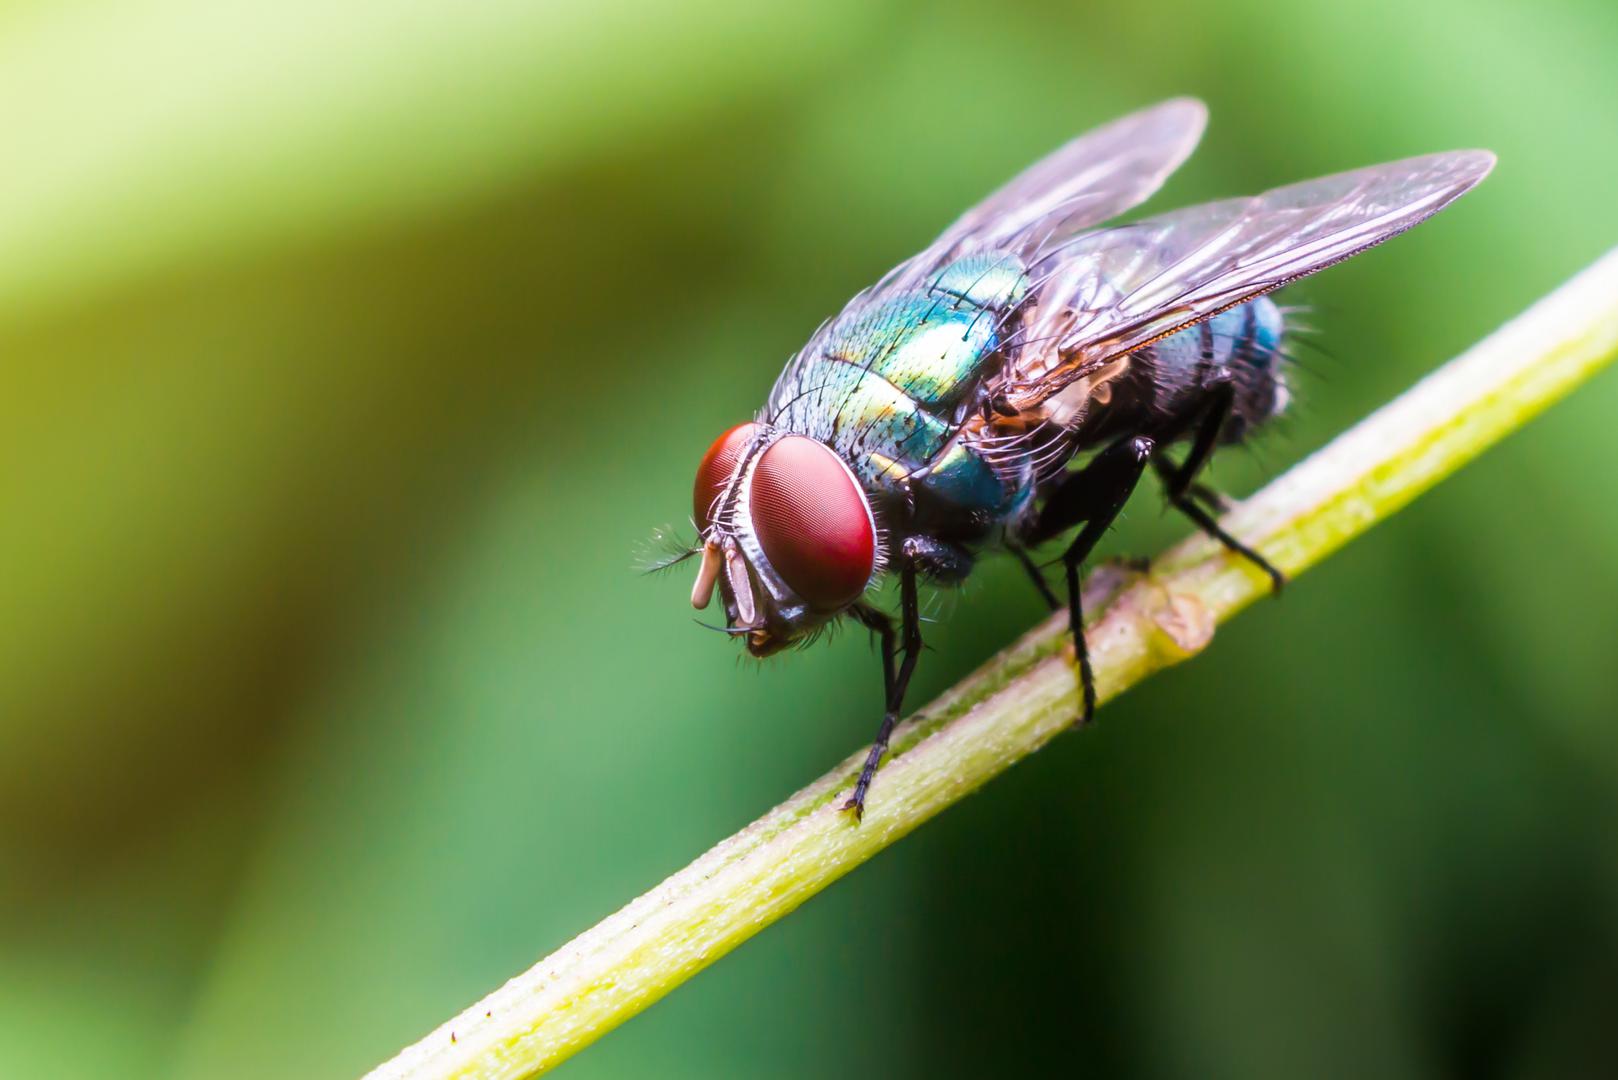 Muhe "zujalice" koje lete u krug iznad naših glava mogu biti vrlo iritantne. Osim toga, njihovo prisustvo u našem domu može biti i prijetnja zdravlju s obzirom na to da muha može nositi oko milijun bakterija na svojim nožicama prekrivenim sićušnim dlakama.

